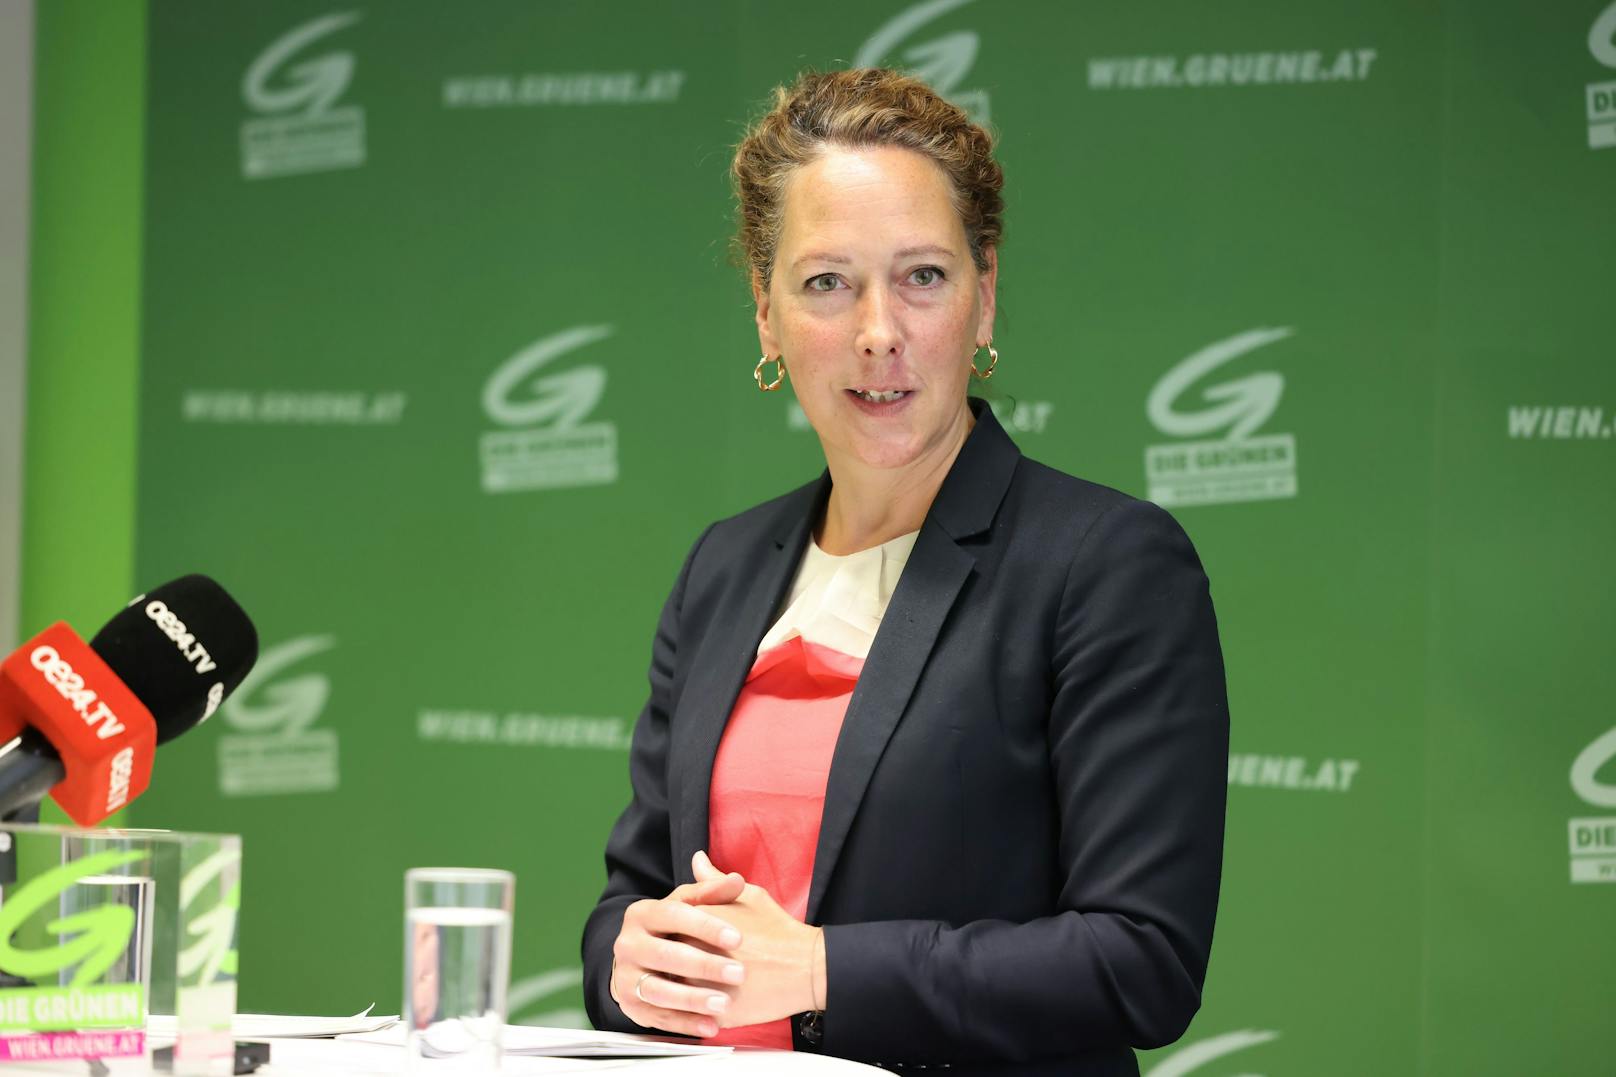 Die Grüne Parteivorsitzende Judith Pühringer fordert neue gesetzliche Maßnahmen gegen touristische Vermietung von Wohnungen. 